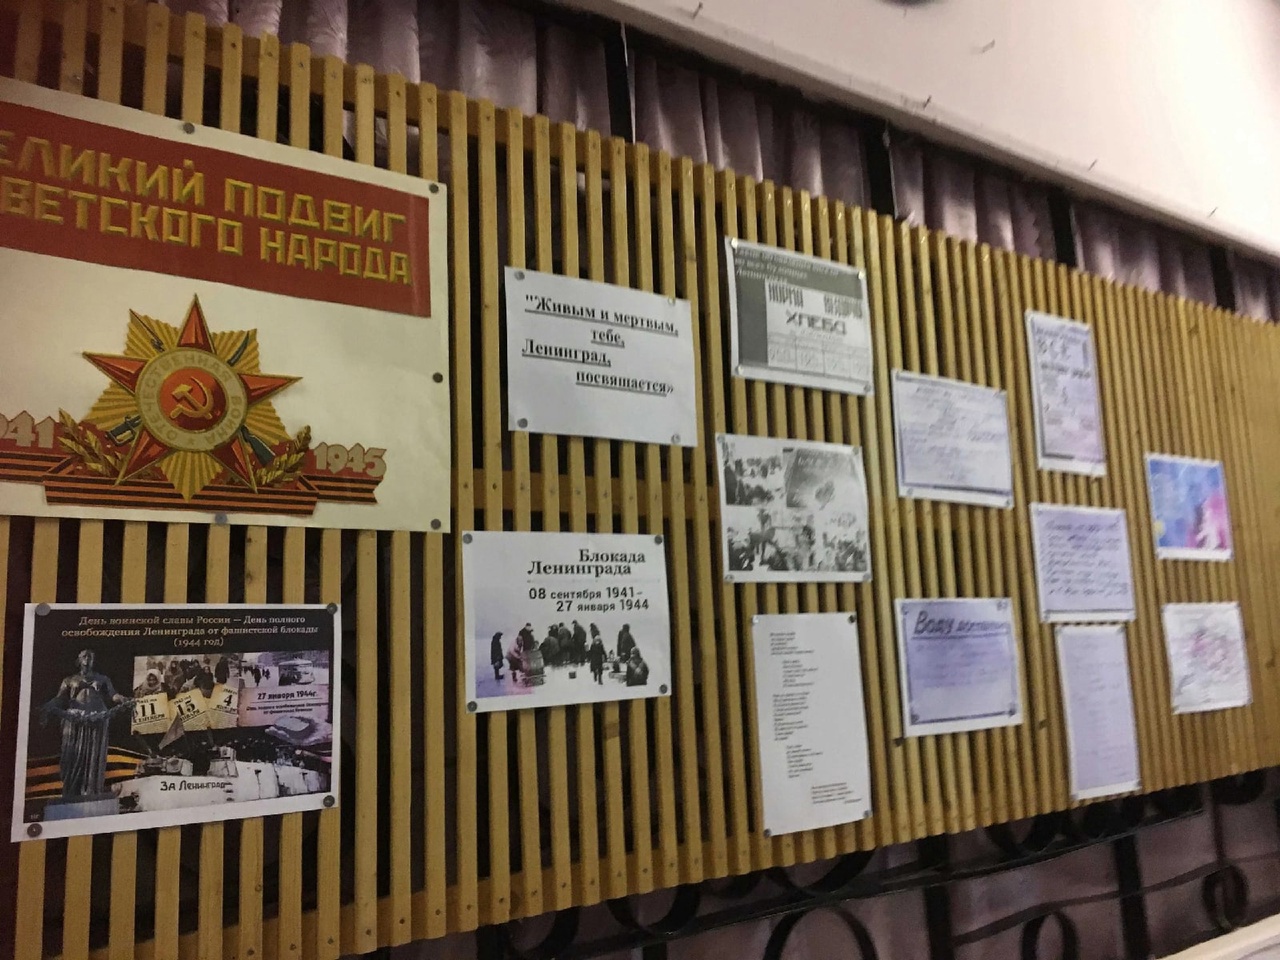 Мероприятия патриотической направленности, посвящённые снятию блокады Ленинграда.